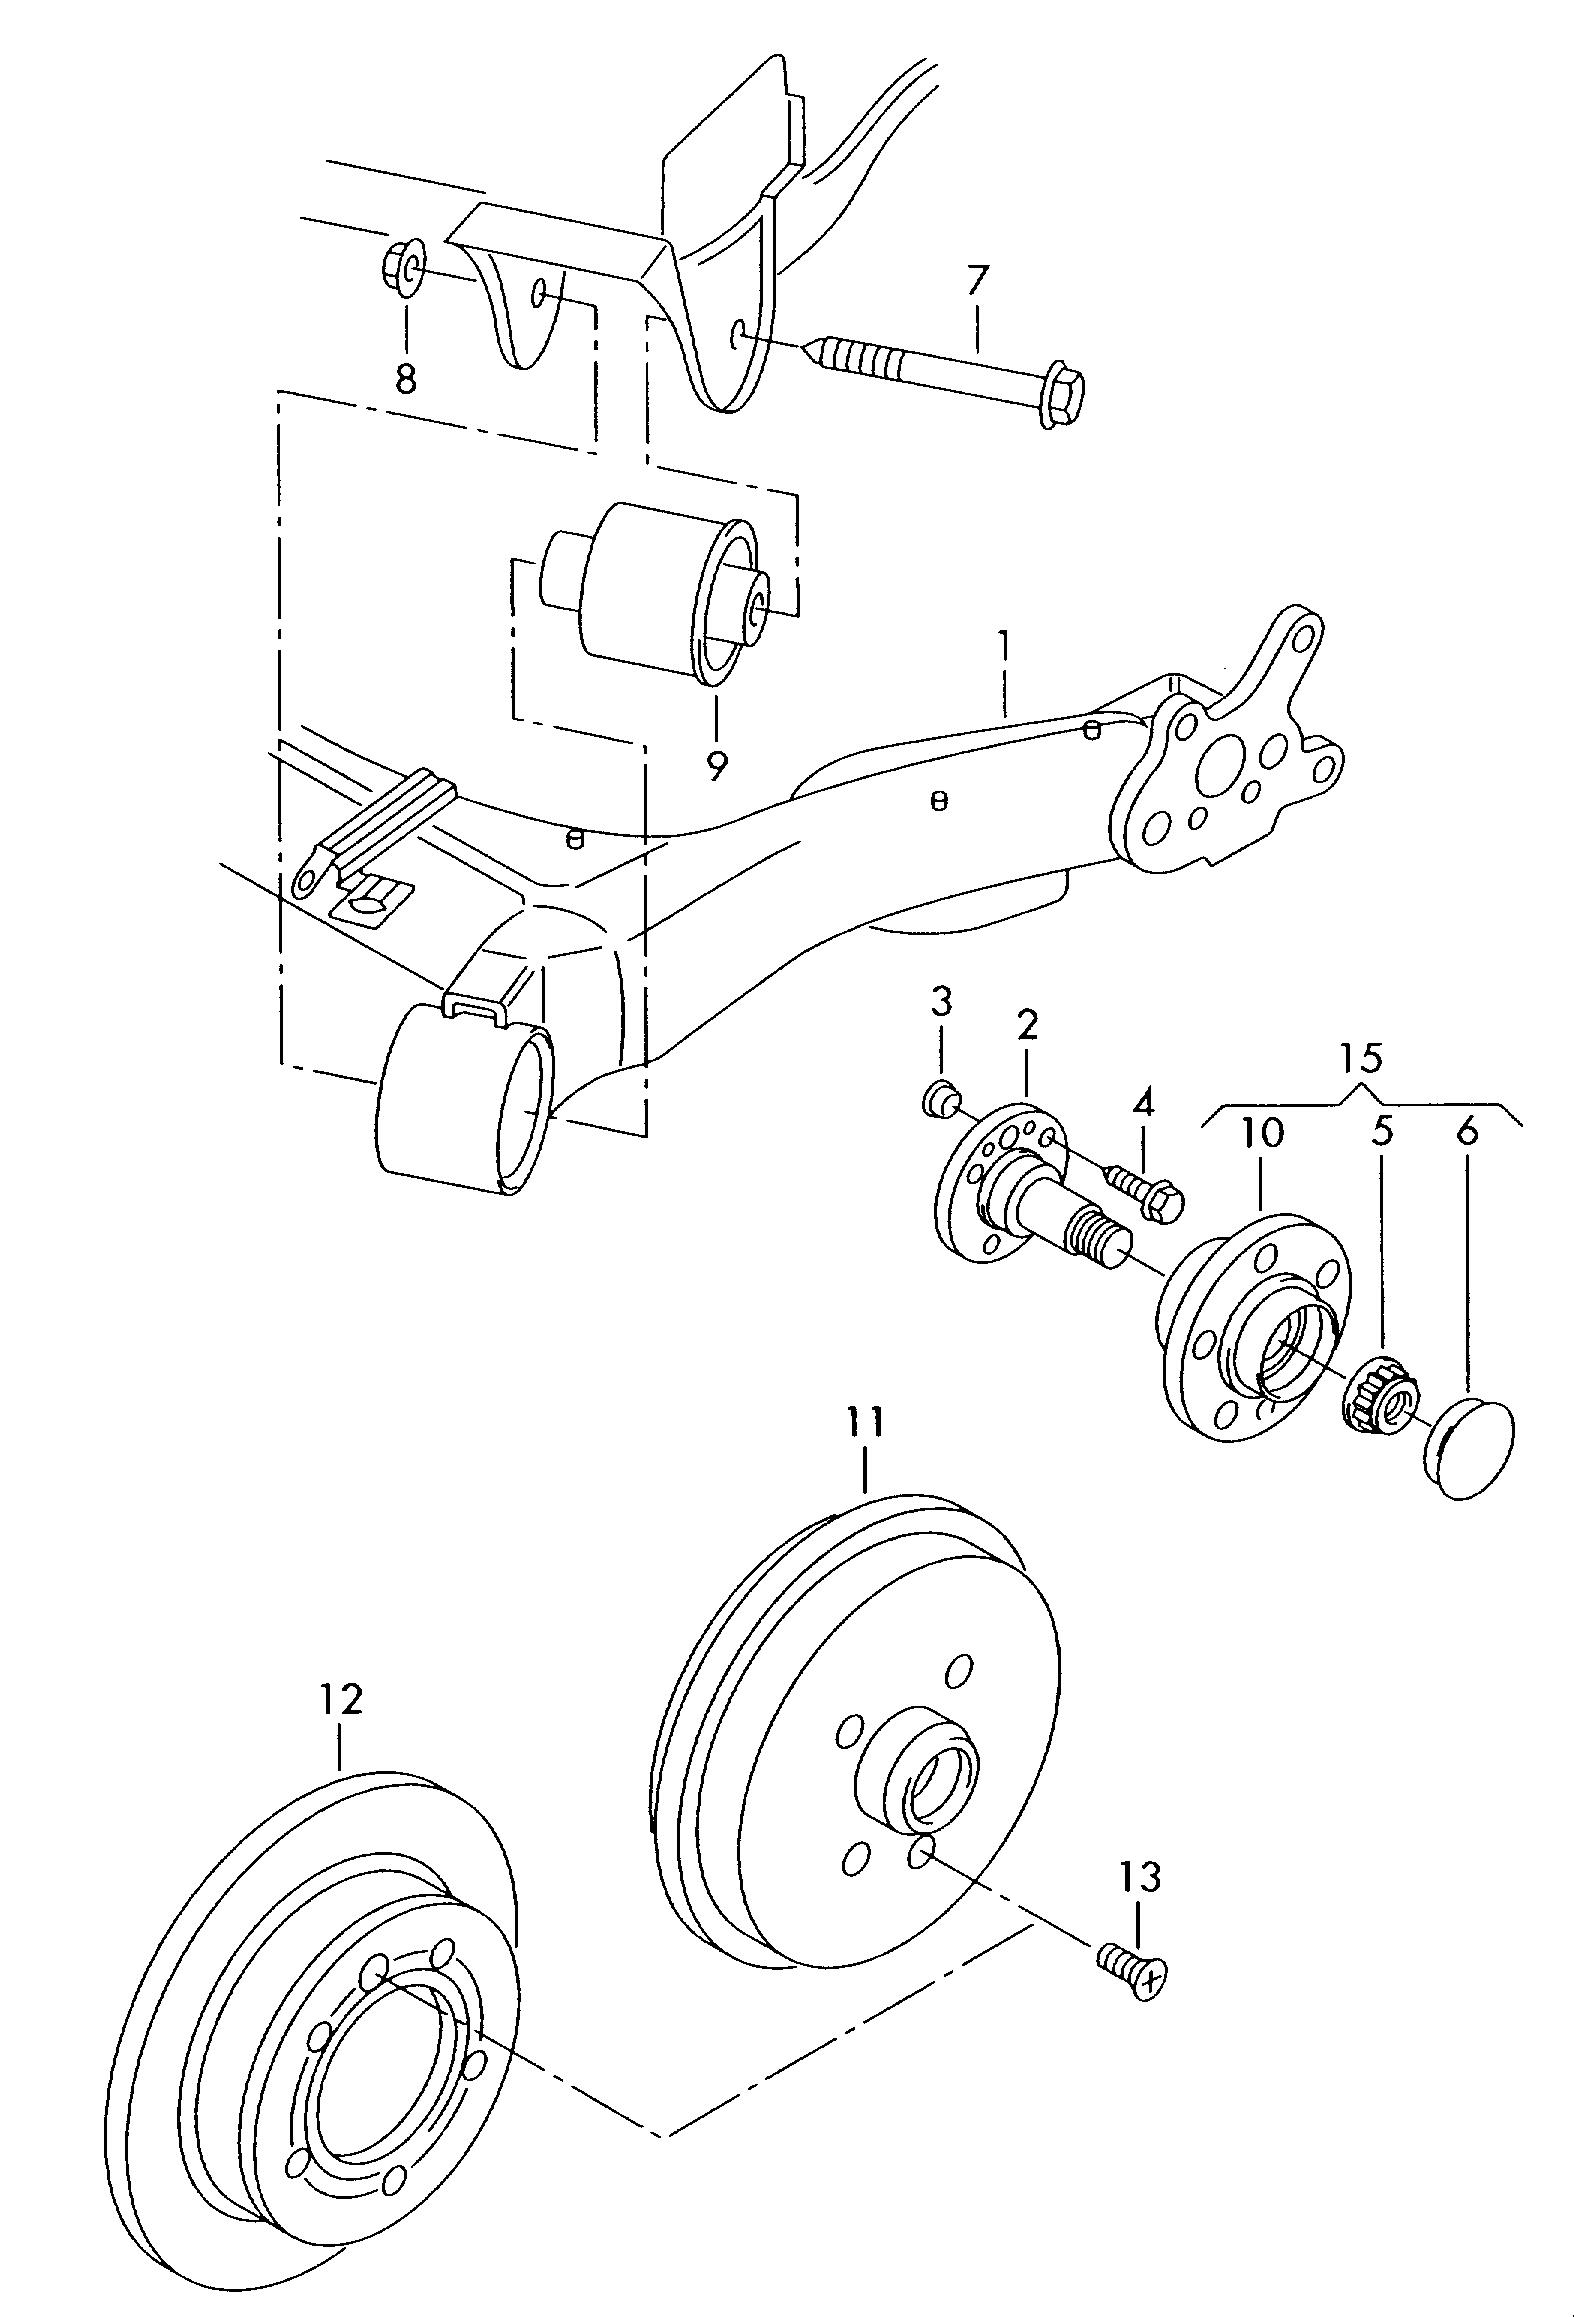 rear axle beam with attachment
parts - Citigo(CIT)  